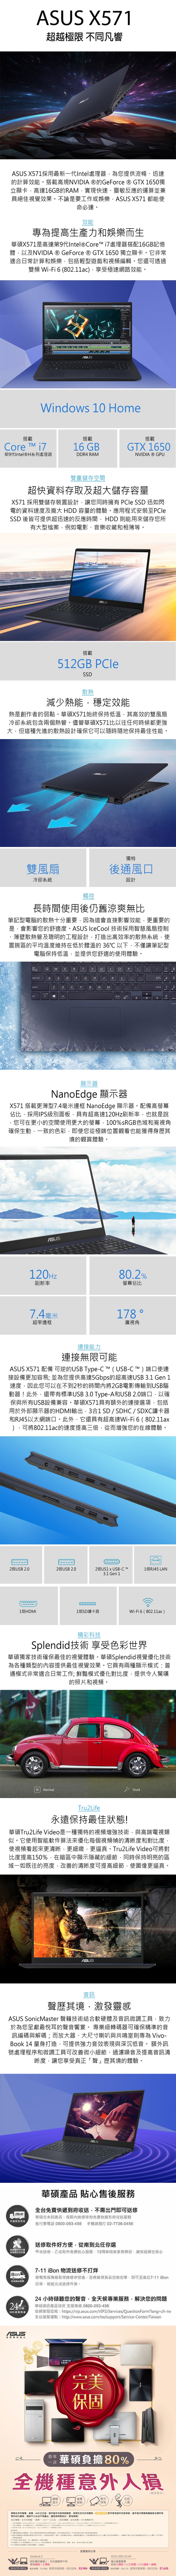 ASUS X571GD 15.6吋筆電 i5-9300H/12G/GTX1050/256G